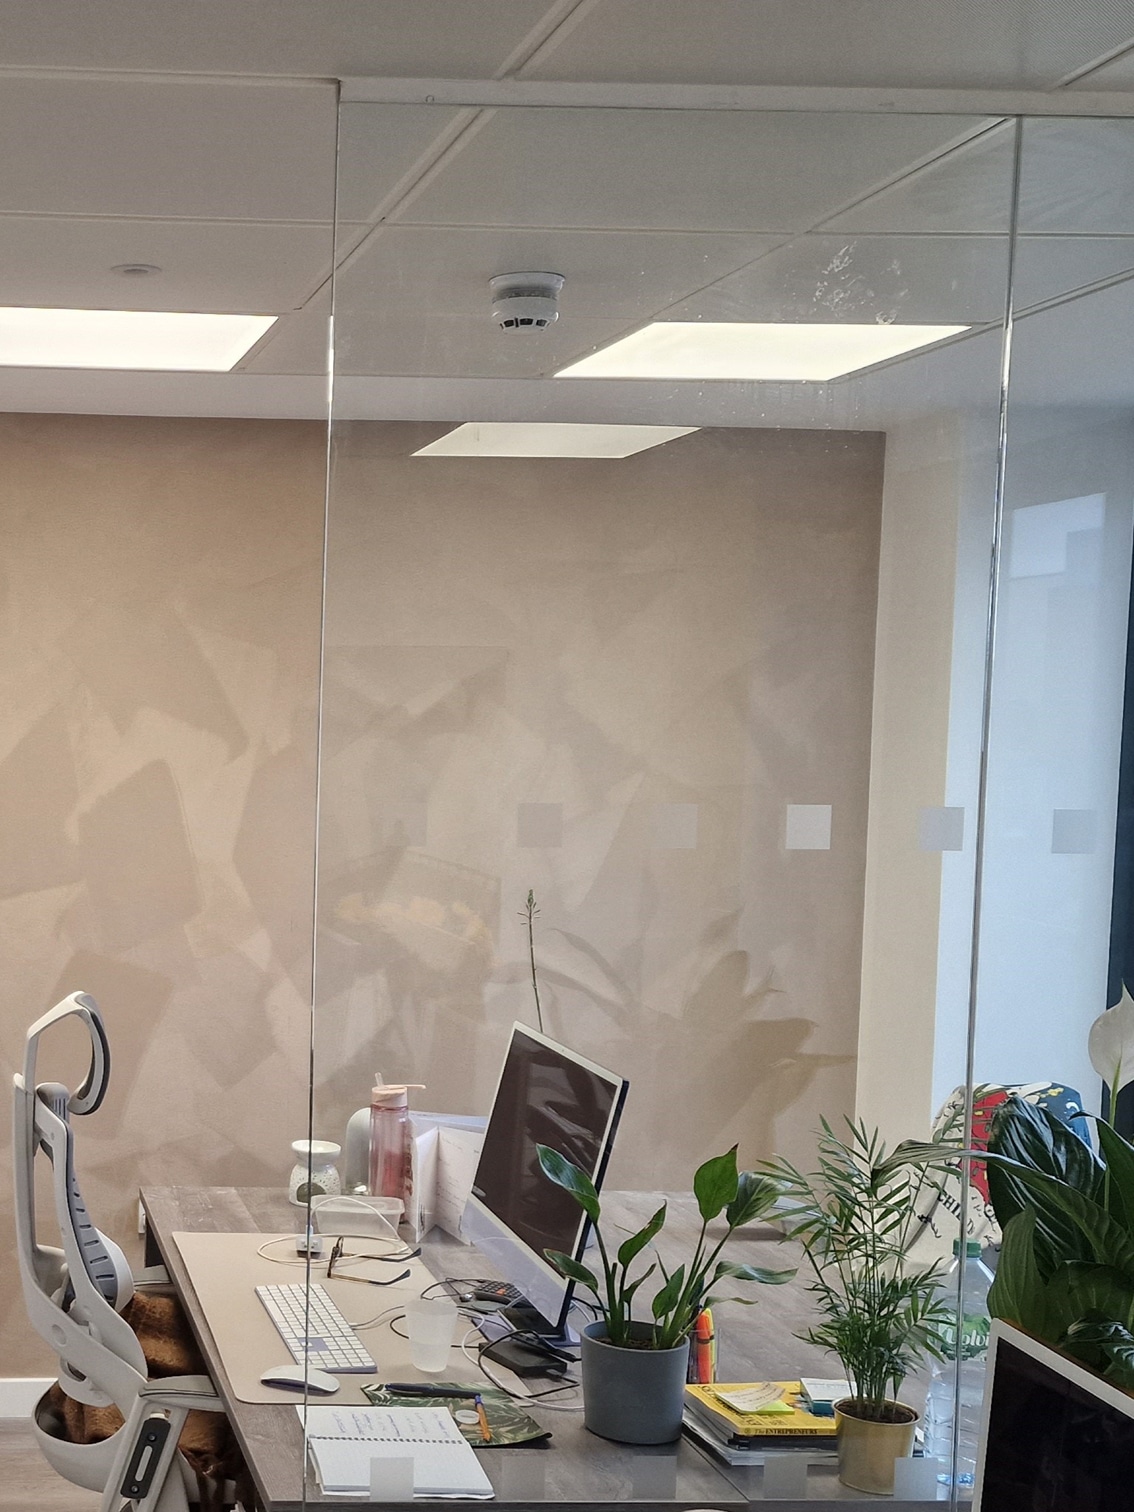 Velvet Fardis wallpaper in beige installed by our team in an office in Regents Street, London.